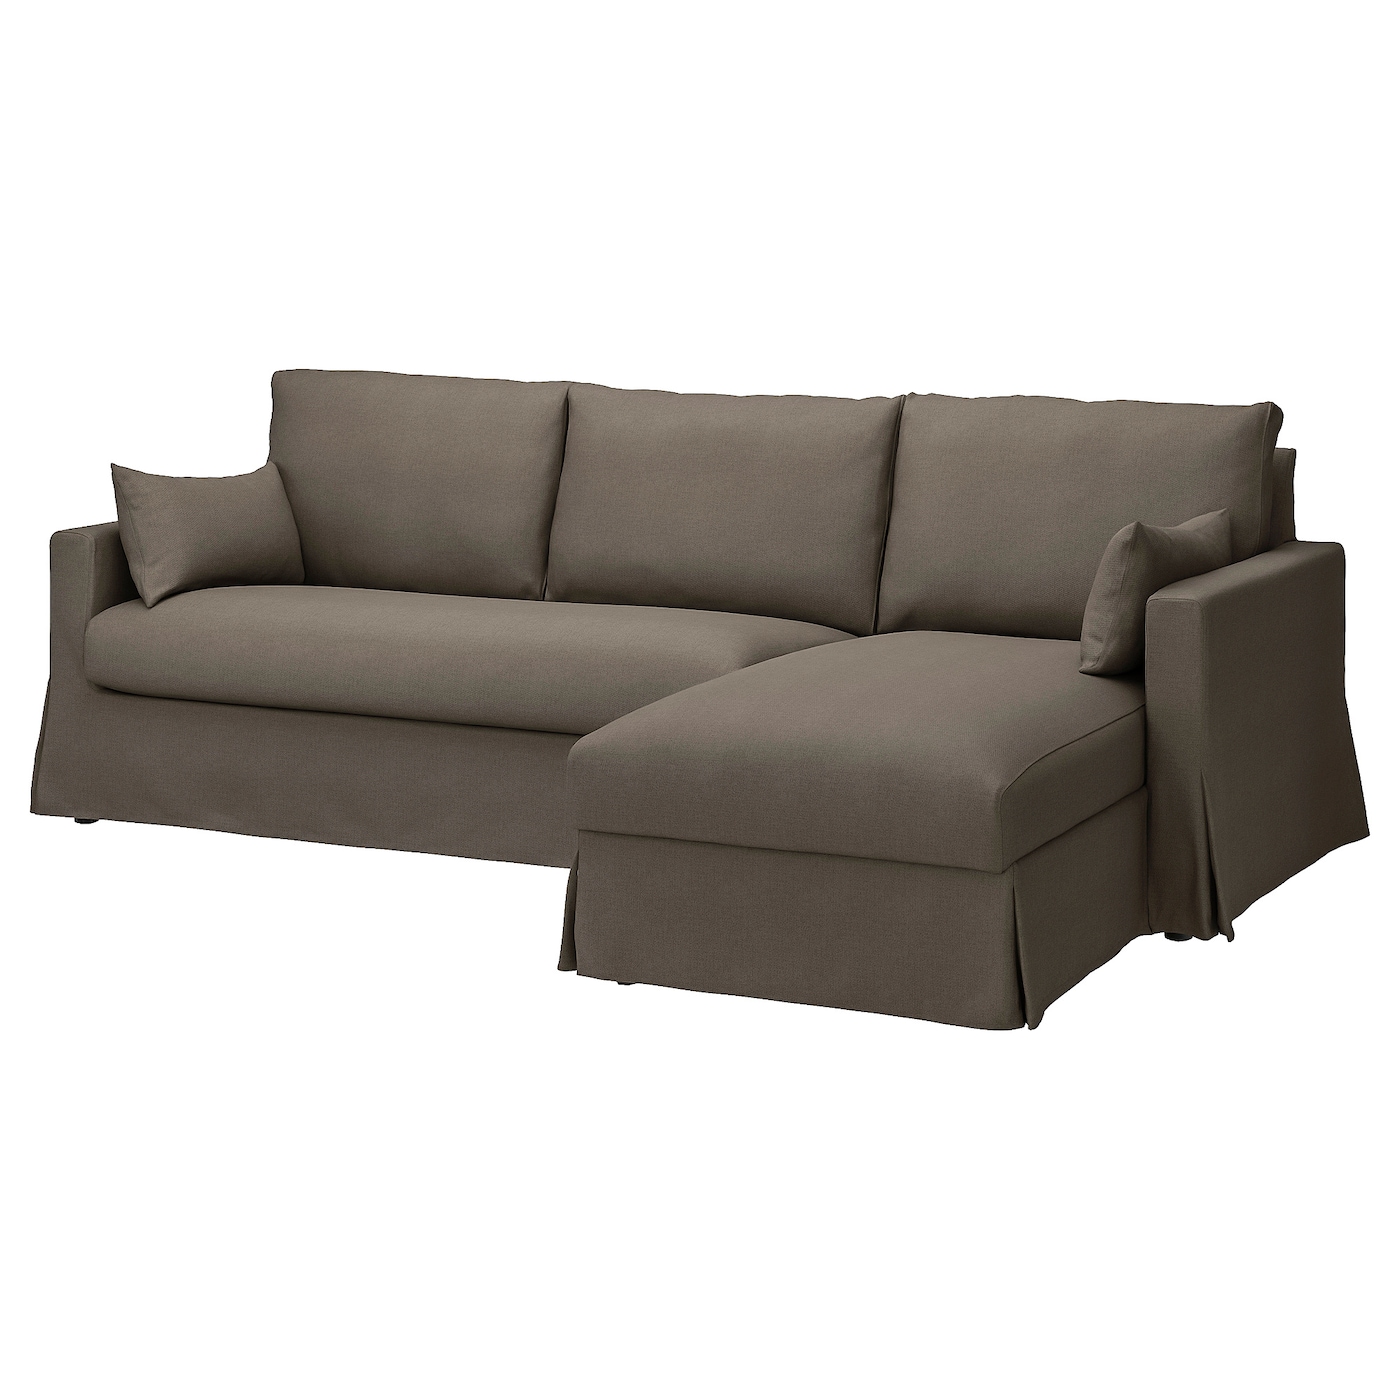 ХИЛТАРП 3-местный диван + диван, правый, Грансель серо-коричневый HYLTARP IKEA